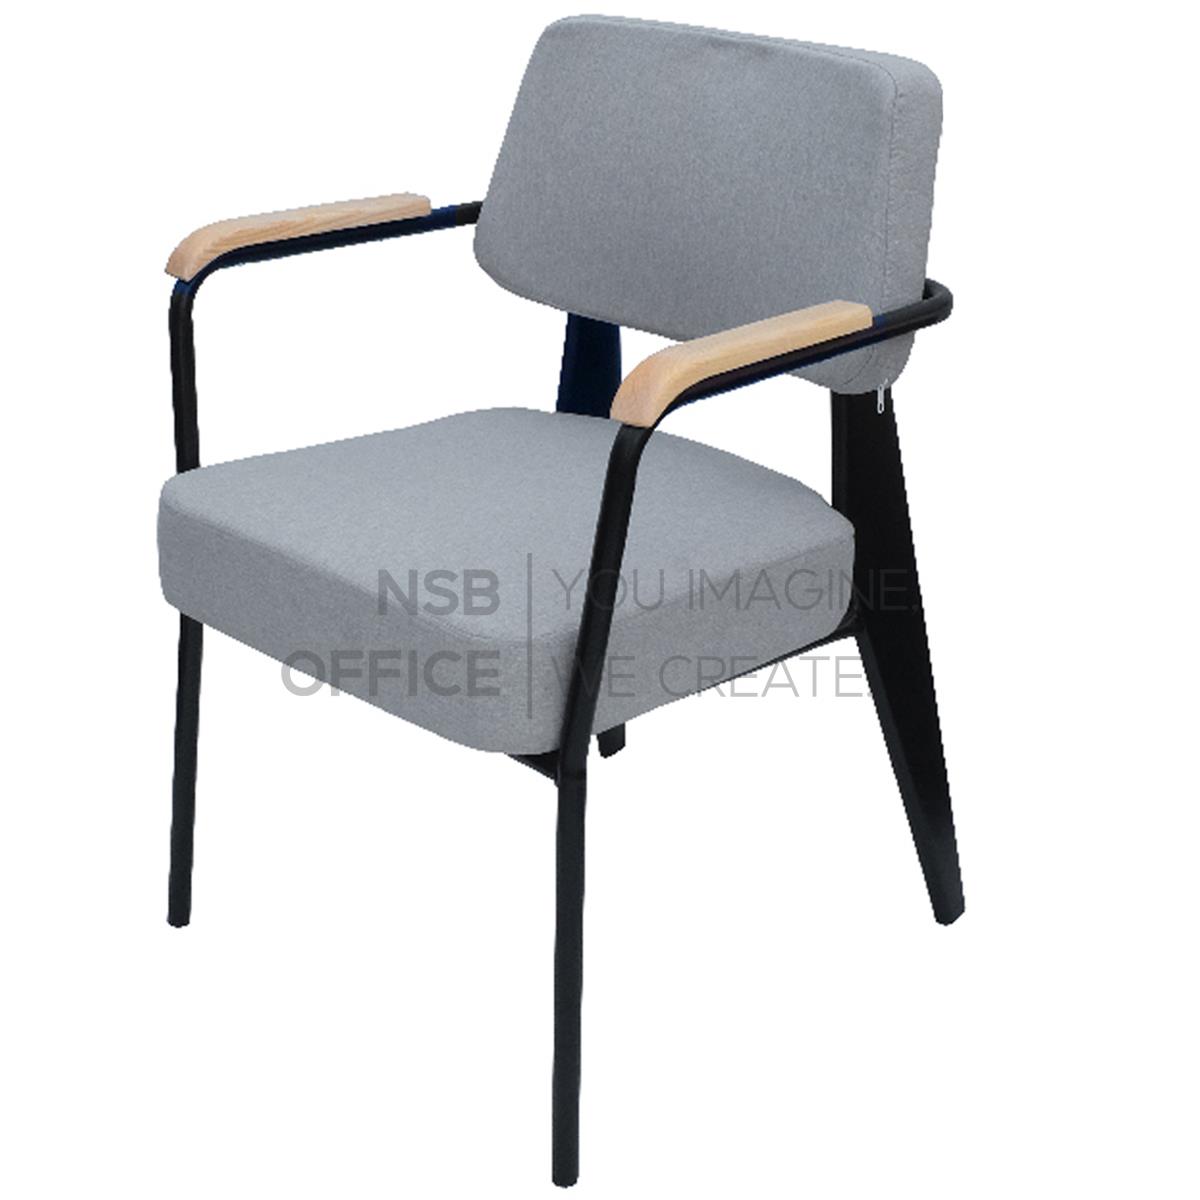 เก้าอี้โมเดิร์นหุ้มผ้า รุ่น Gracefy (เกรซฟี่) ขนาด 58.5W cm.  ขาเหล็ก